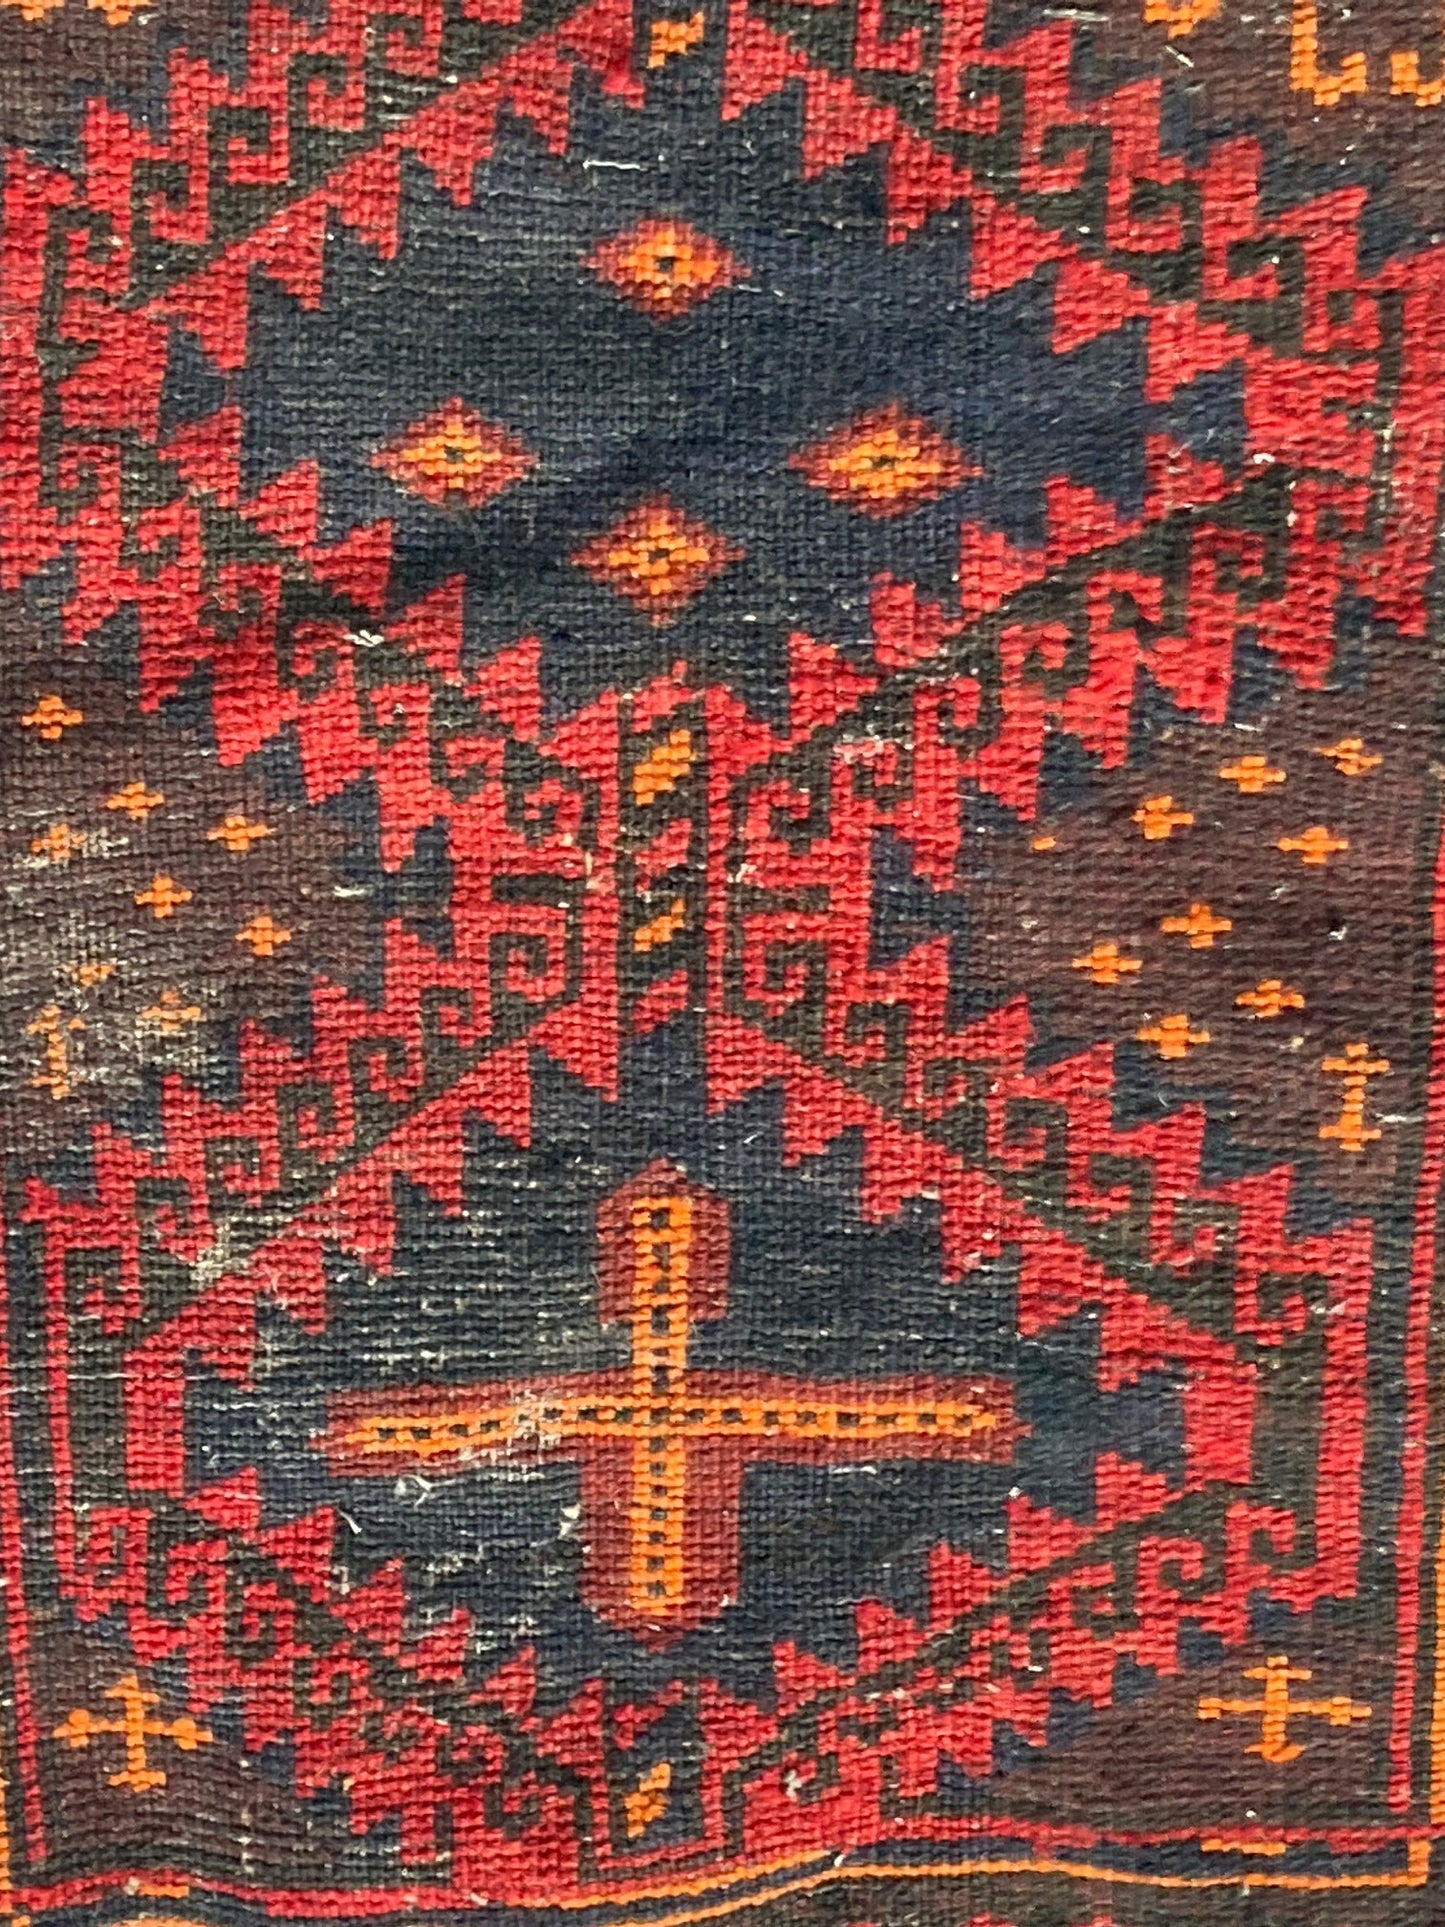 Tribal Handwoven Saddle Bag